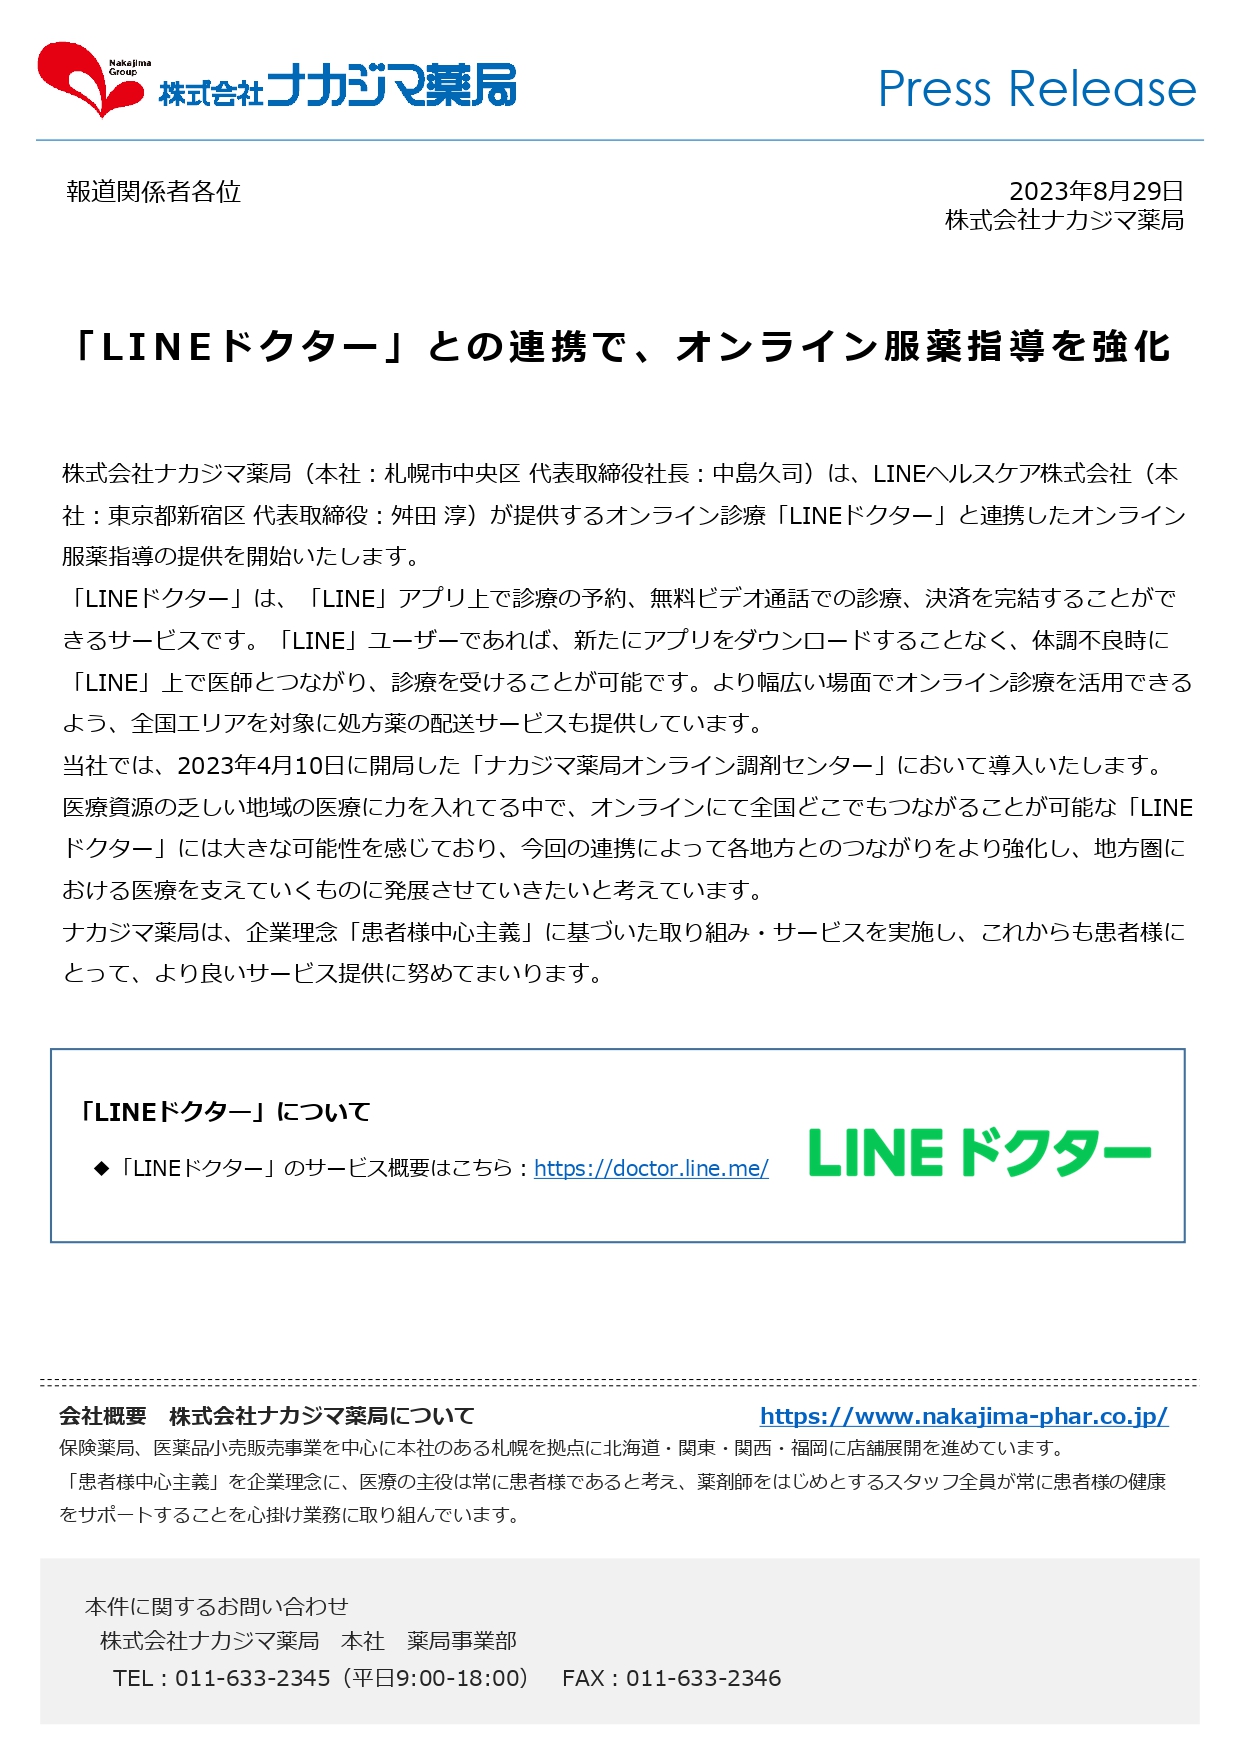 【プレスリリース】「LINEドクター」との連携で、オンライン服薬指導を強化